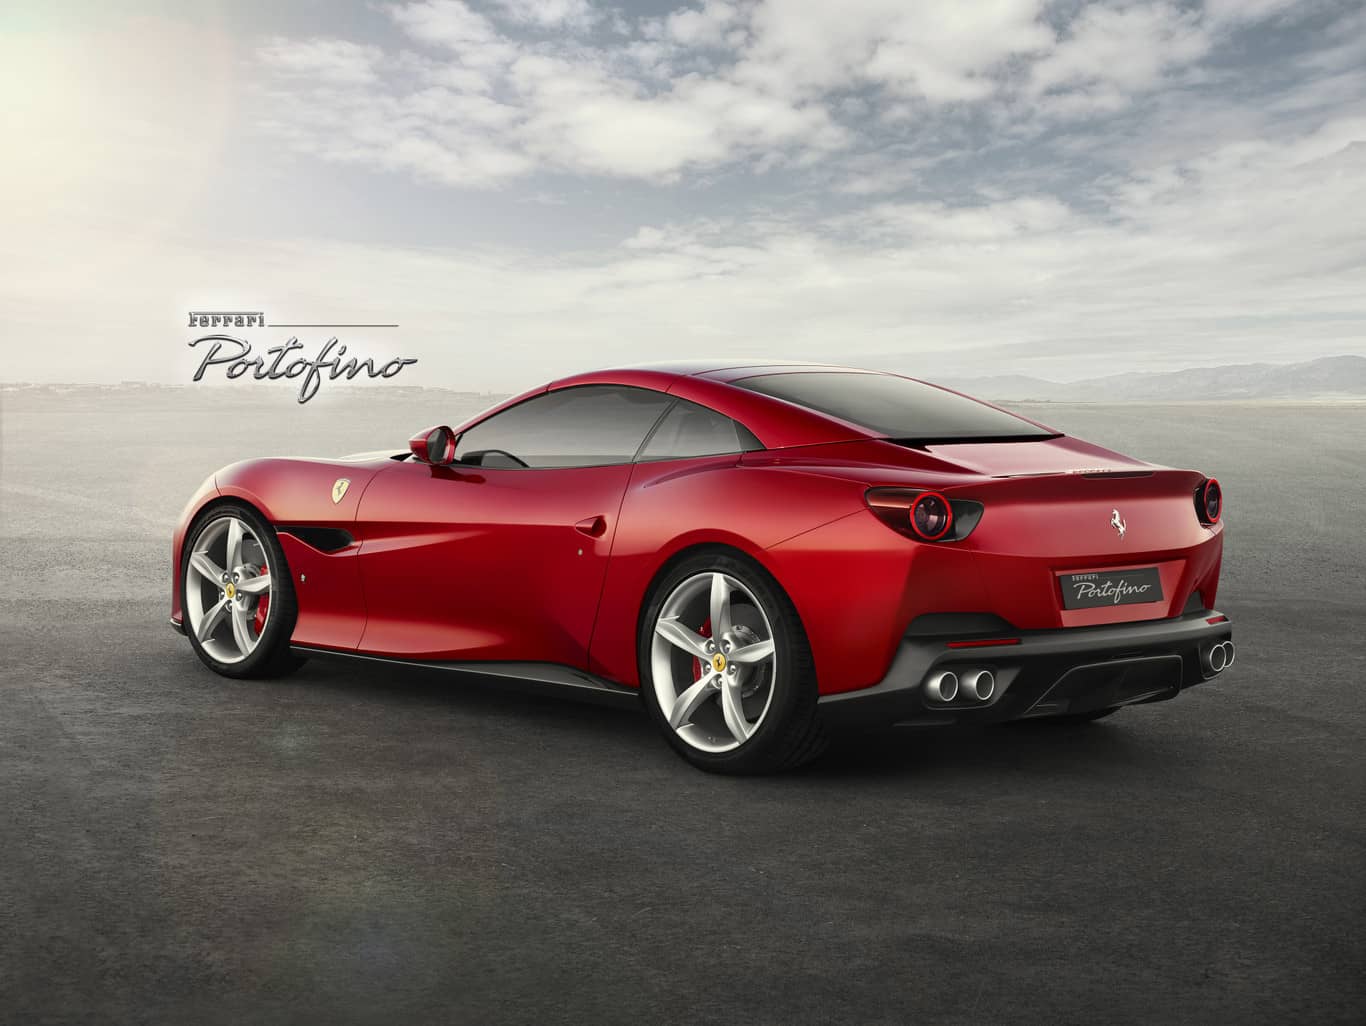 Ferrari Portofino | Ferrari of Fort Lauderdale